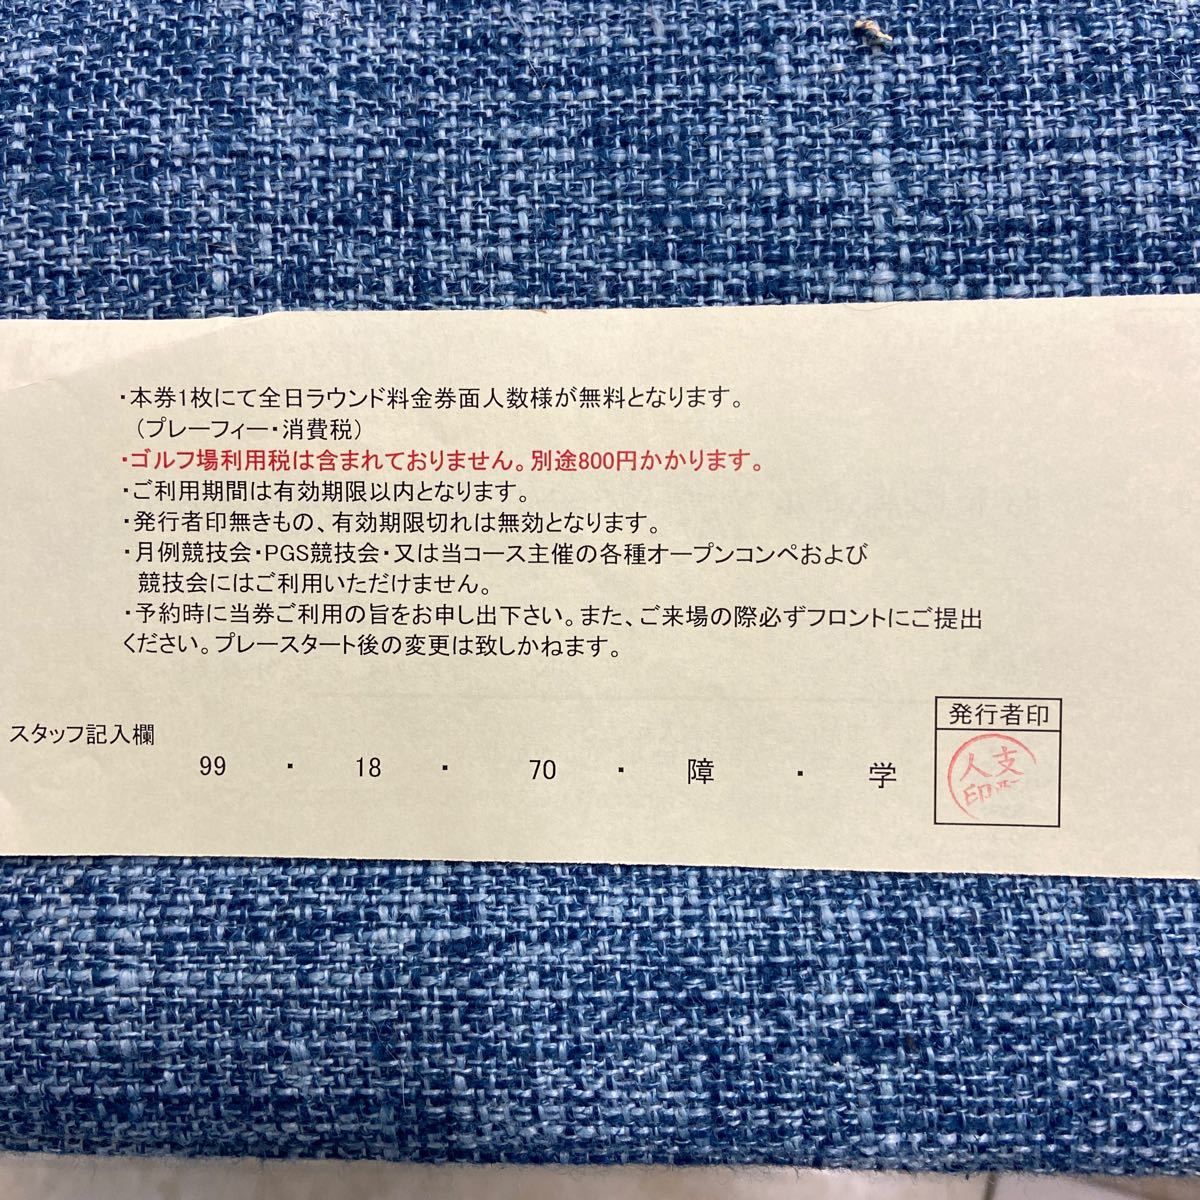 関西オープンゴルフ選手権の招待券